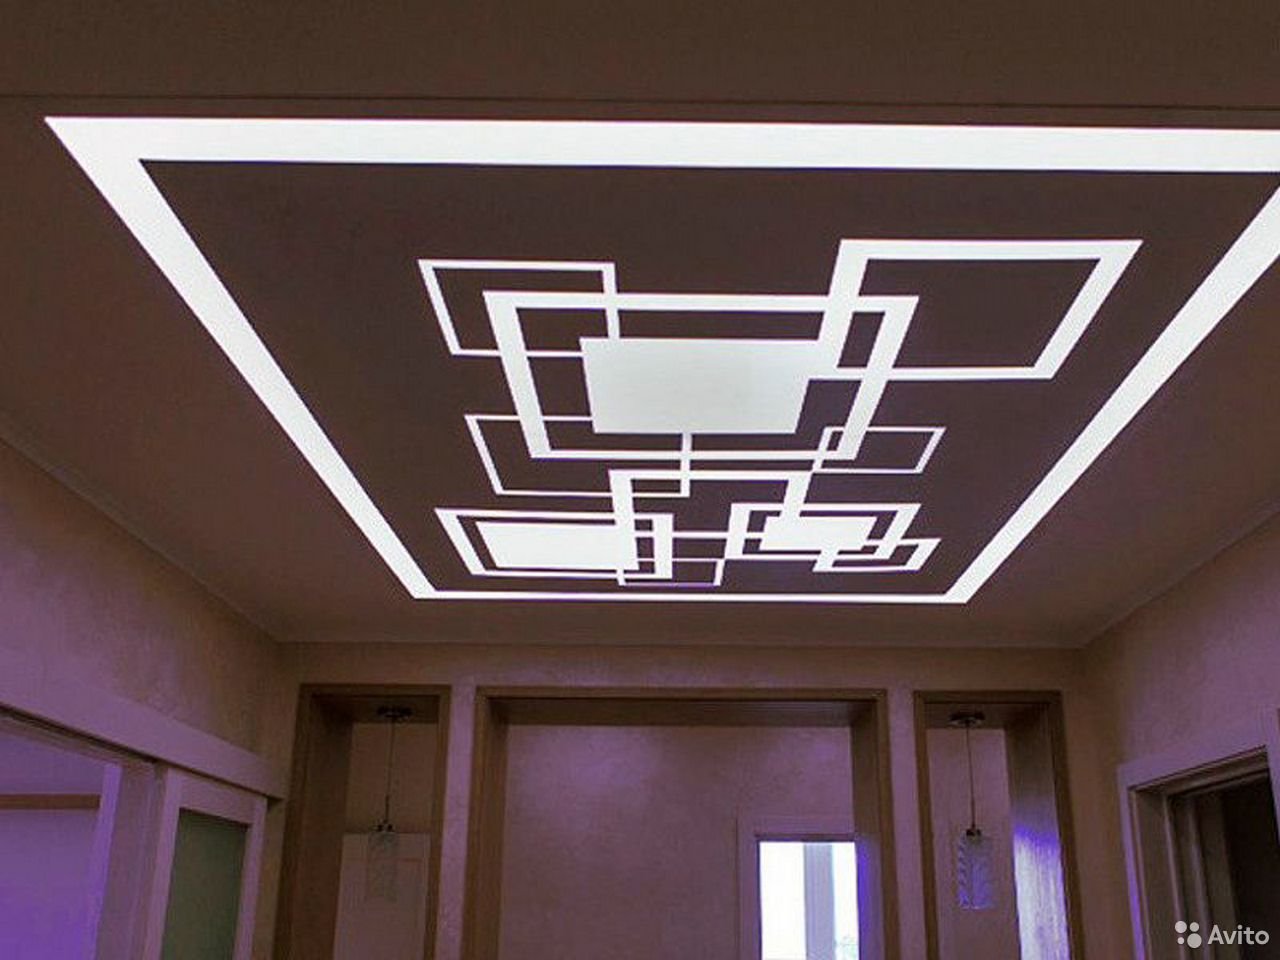 Вправо в потолок. Световые линии на натяжном потолке. Подвесные потолки со световыми линиями. Светящиеся линии на потолке. Потолок с линиями подсветки.